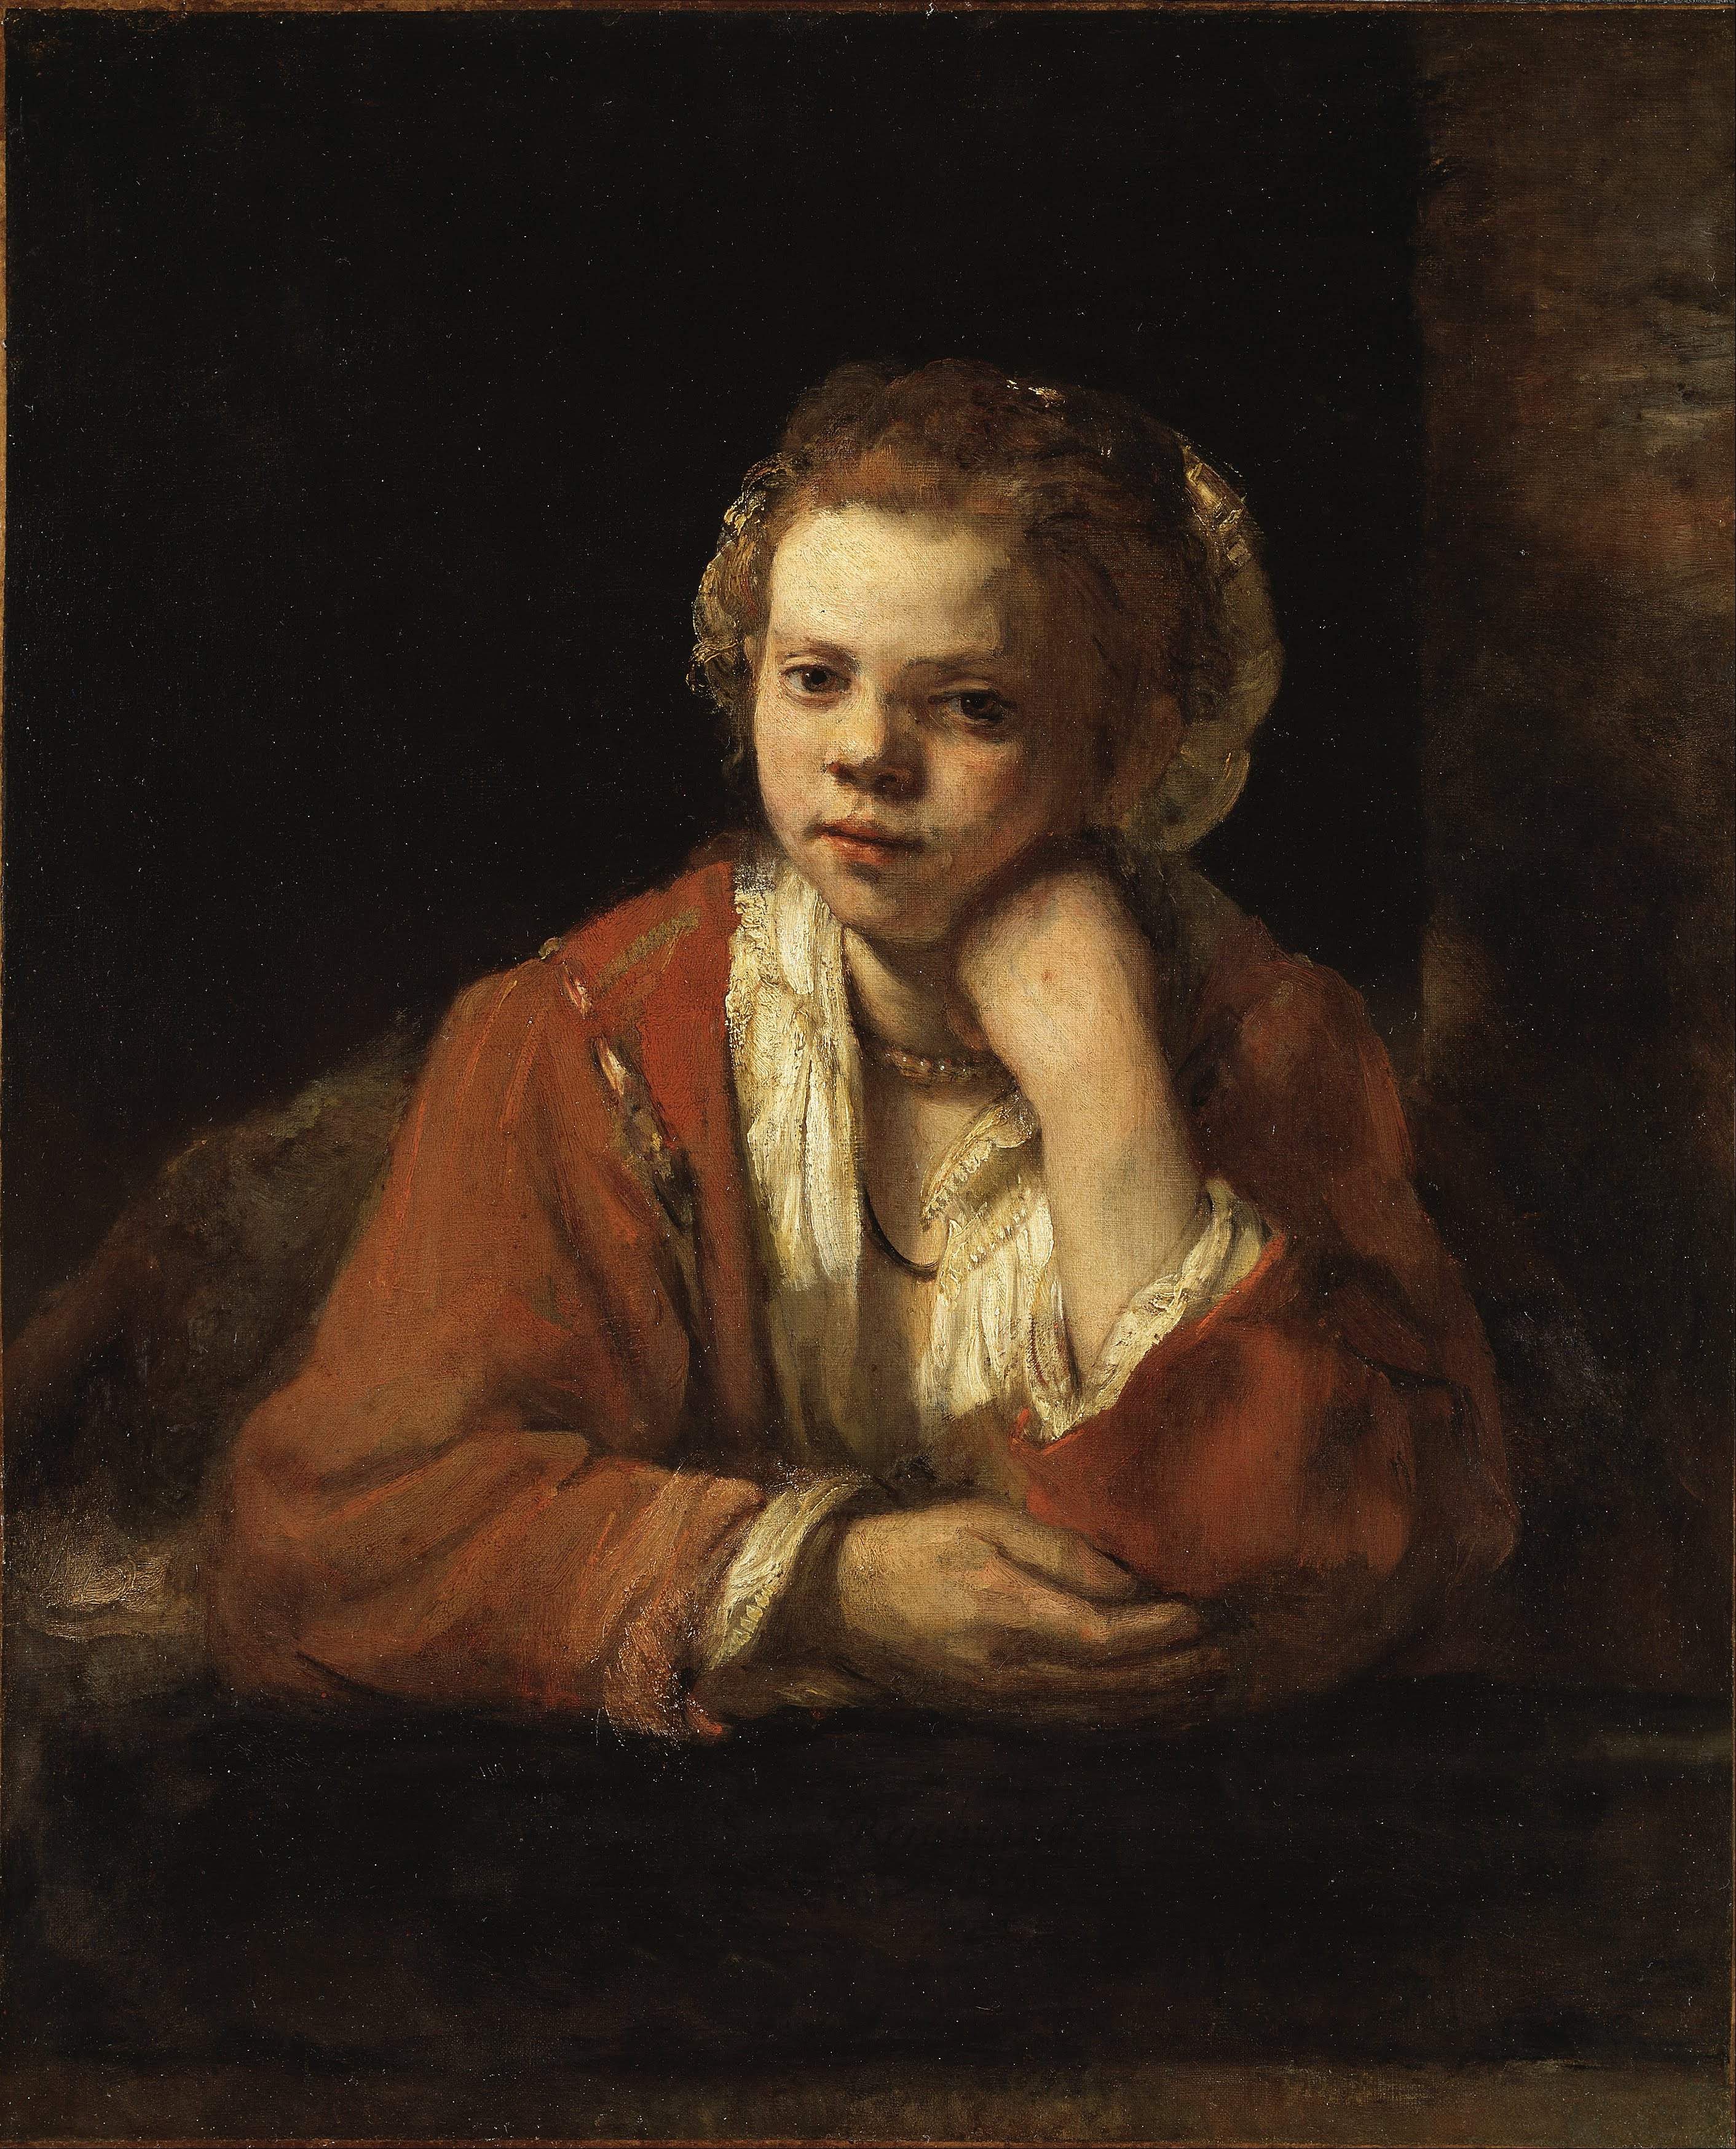 خادمة المطبخ by Rembrandt van Rijn - 1651 - 64 x 78 سم 